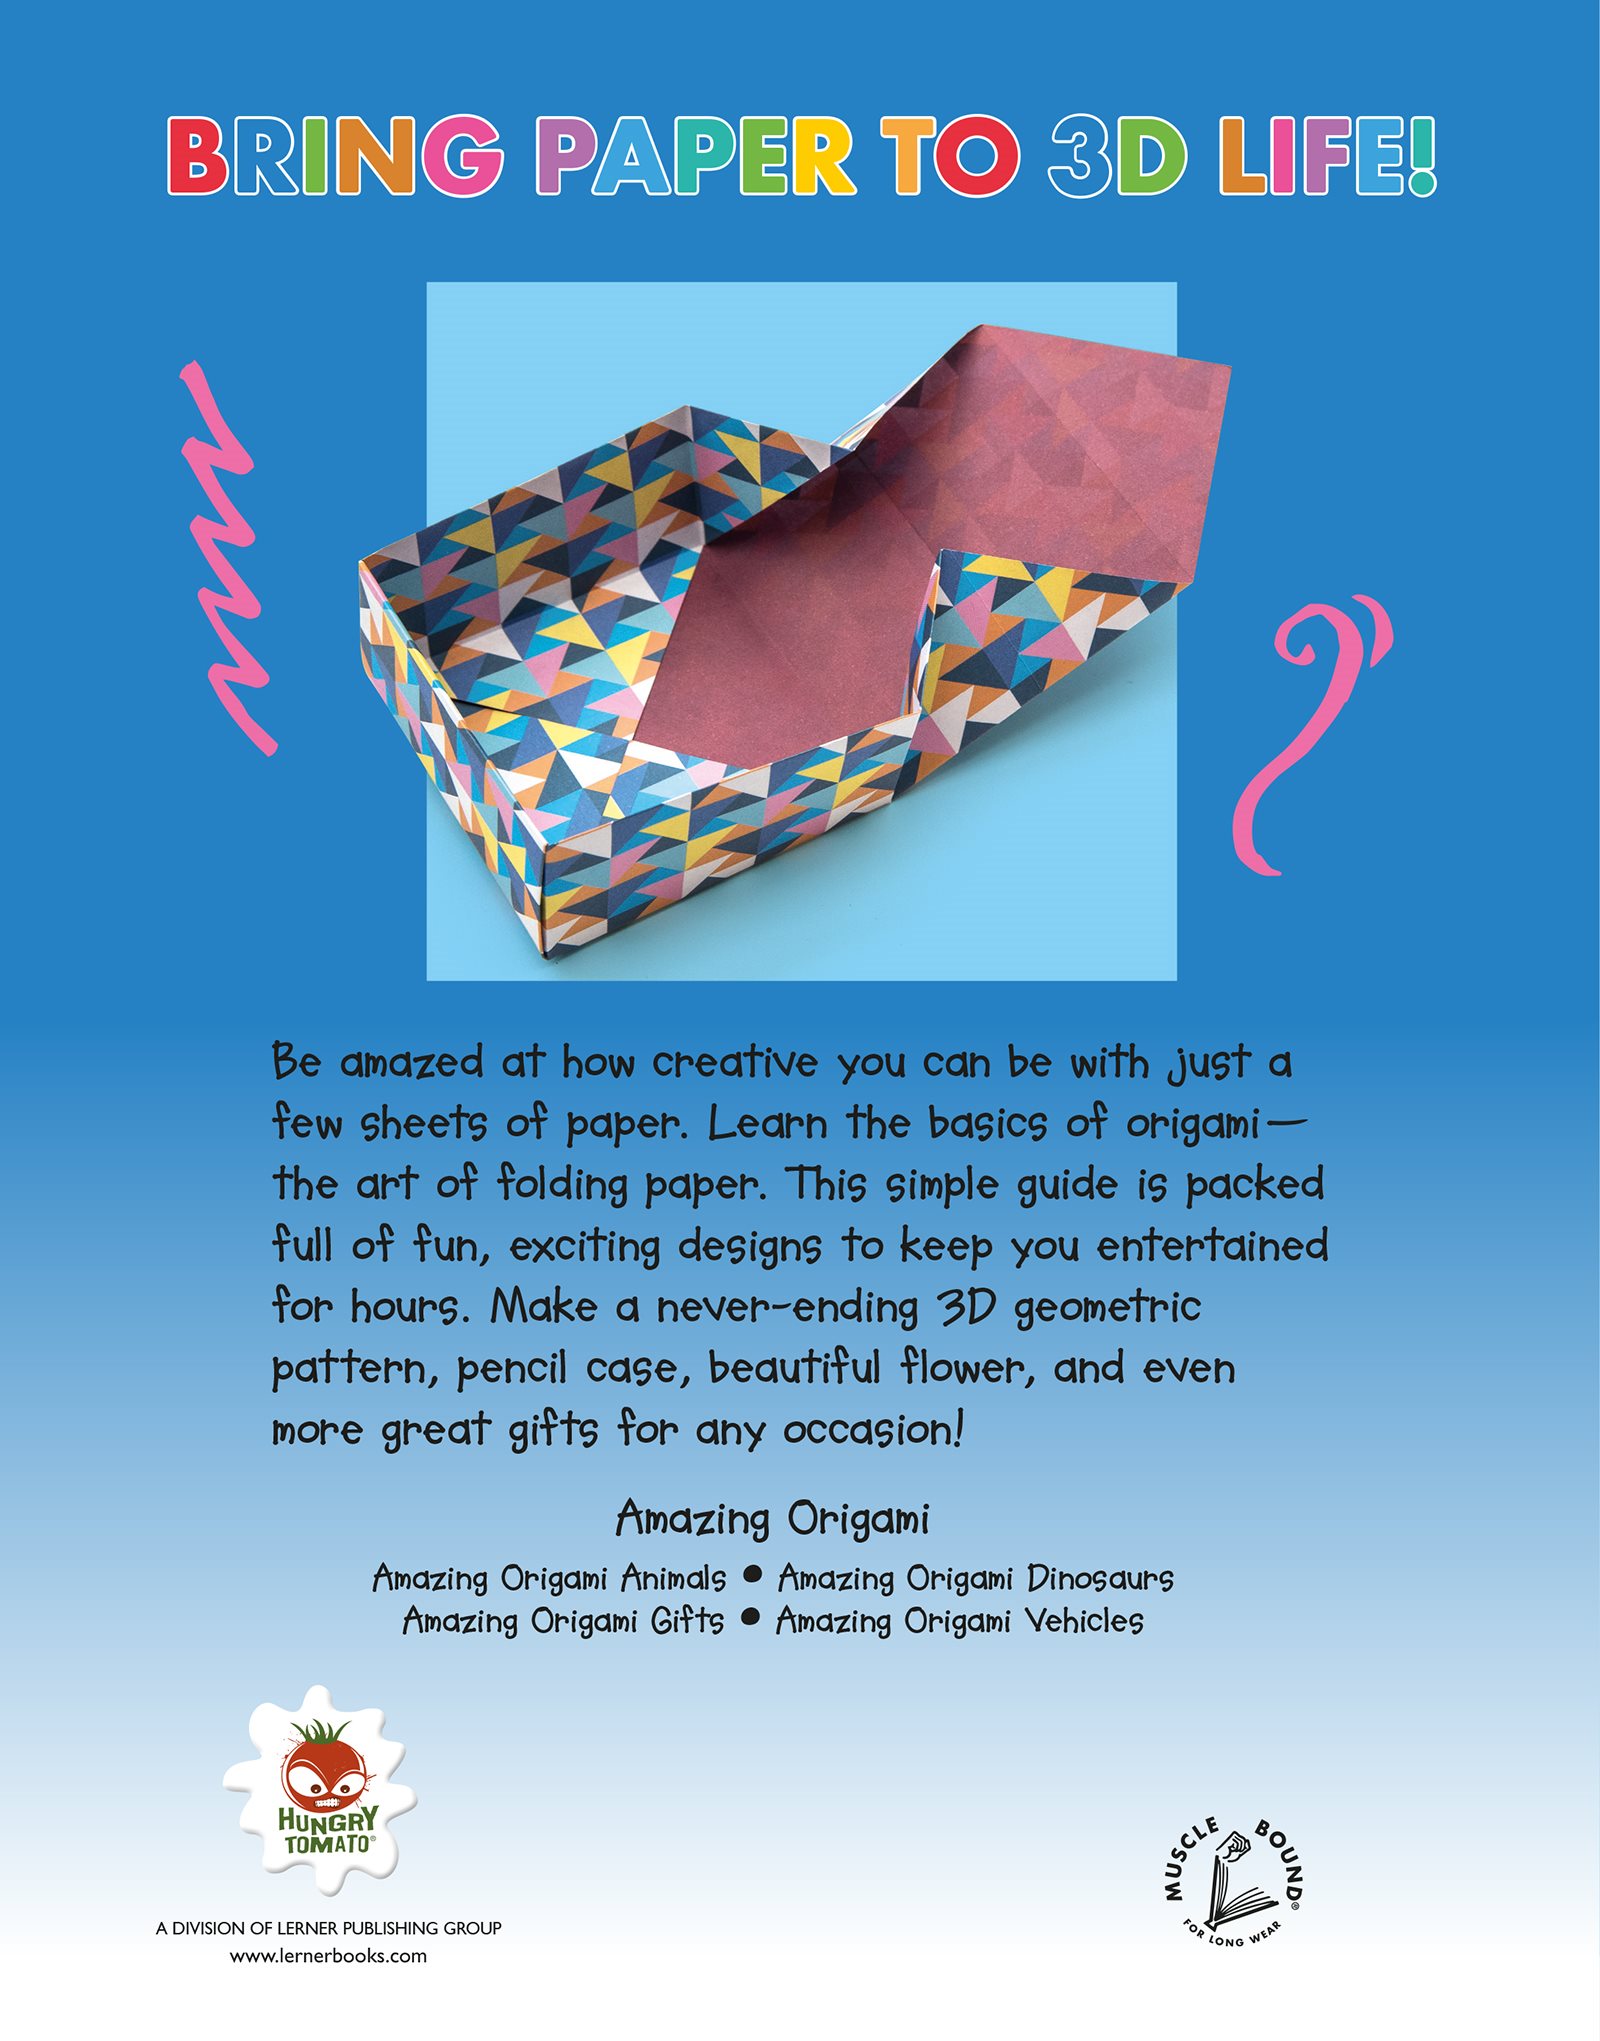 Amazing Origami Gifts - photo 2